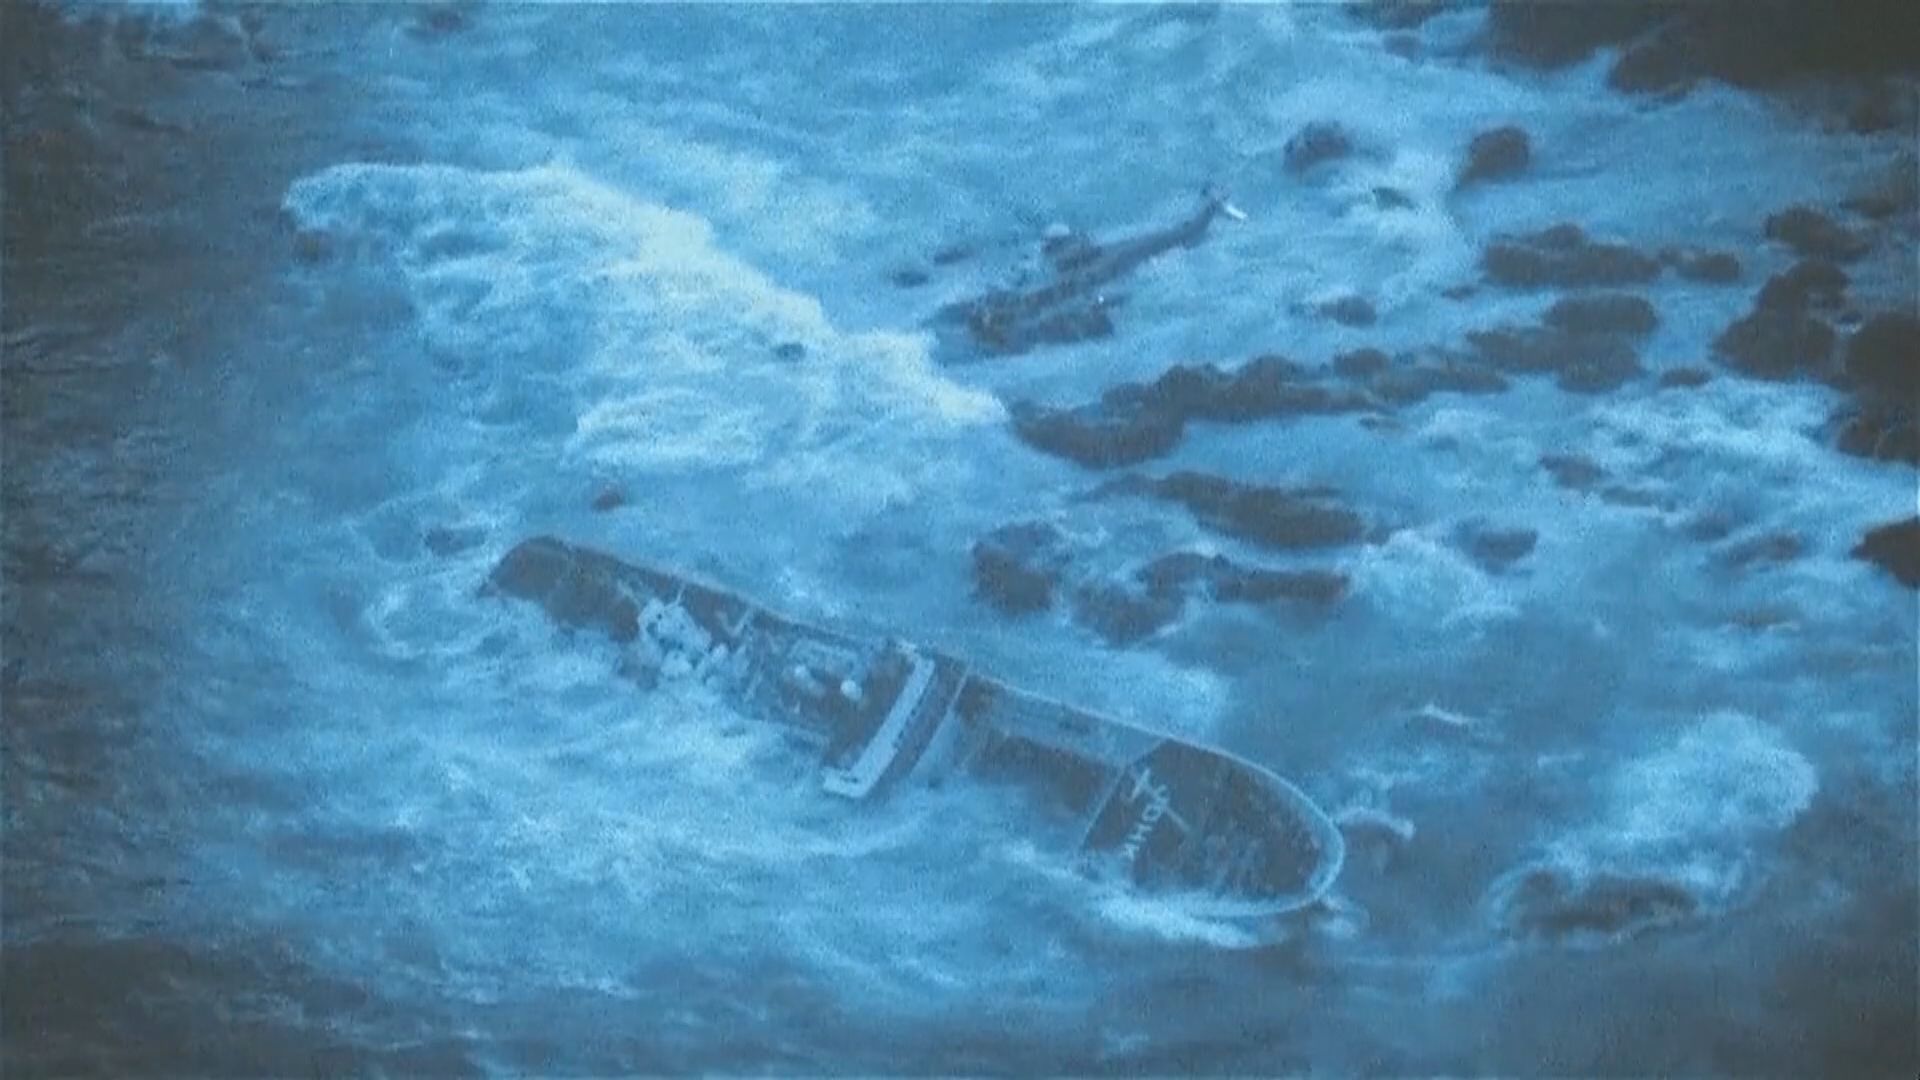 日本伊豆群島吞拿魚漁船擱淺 1死24人獲救